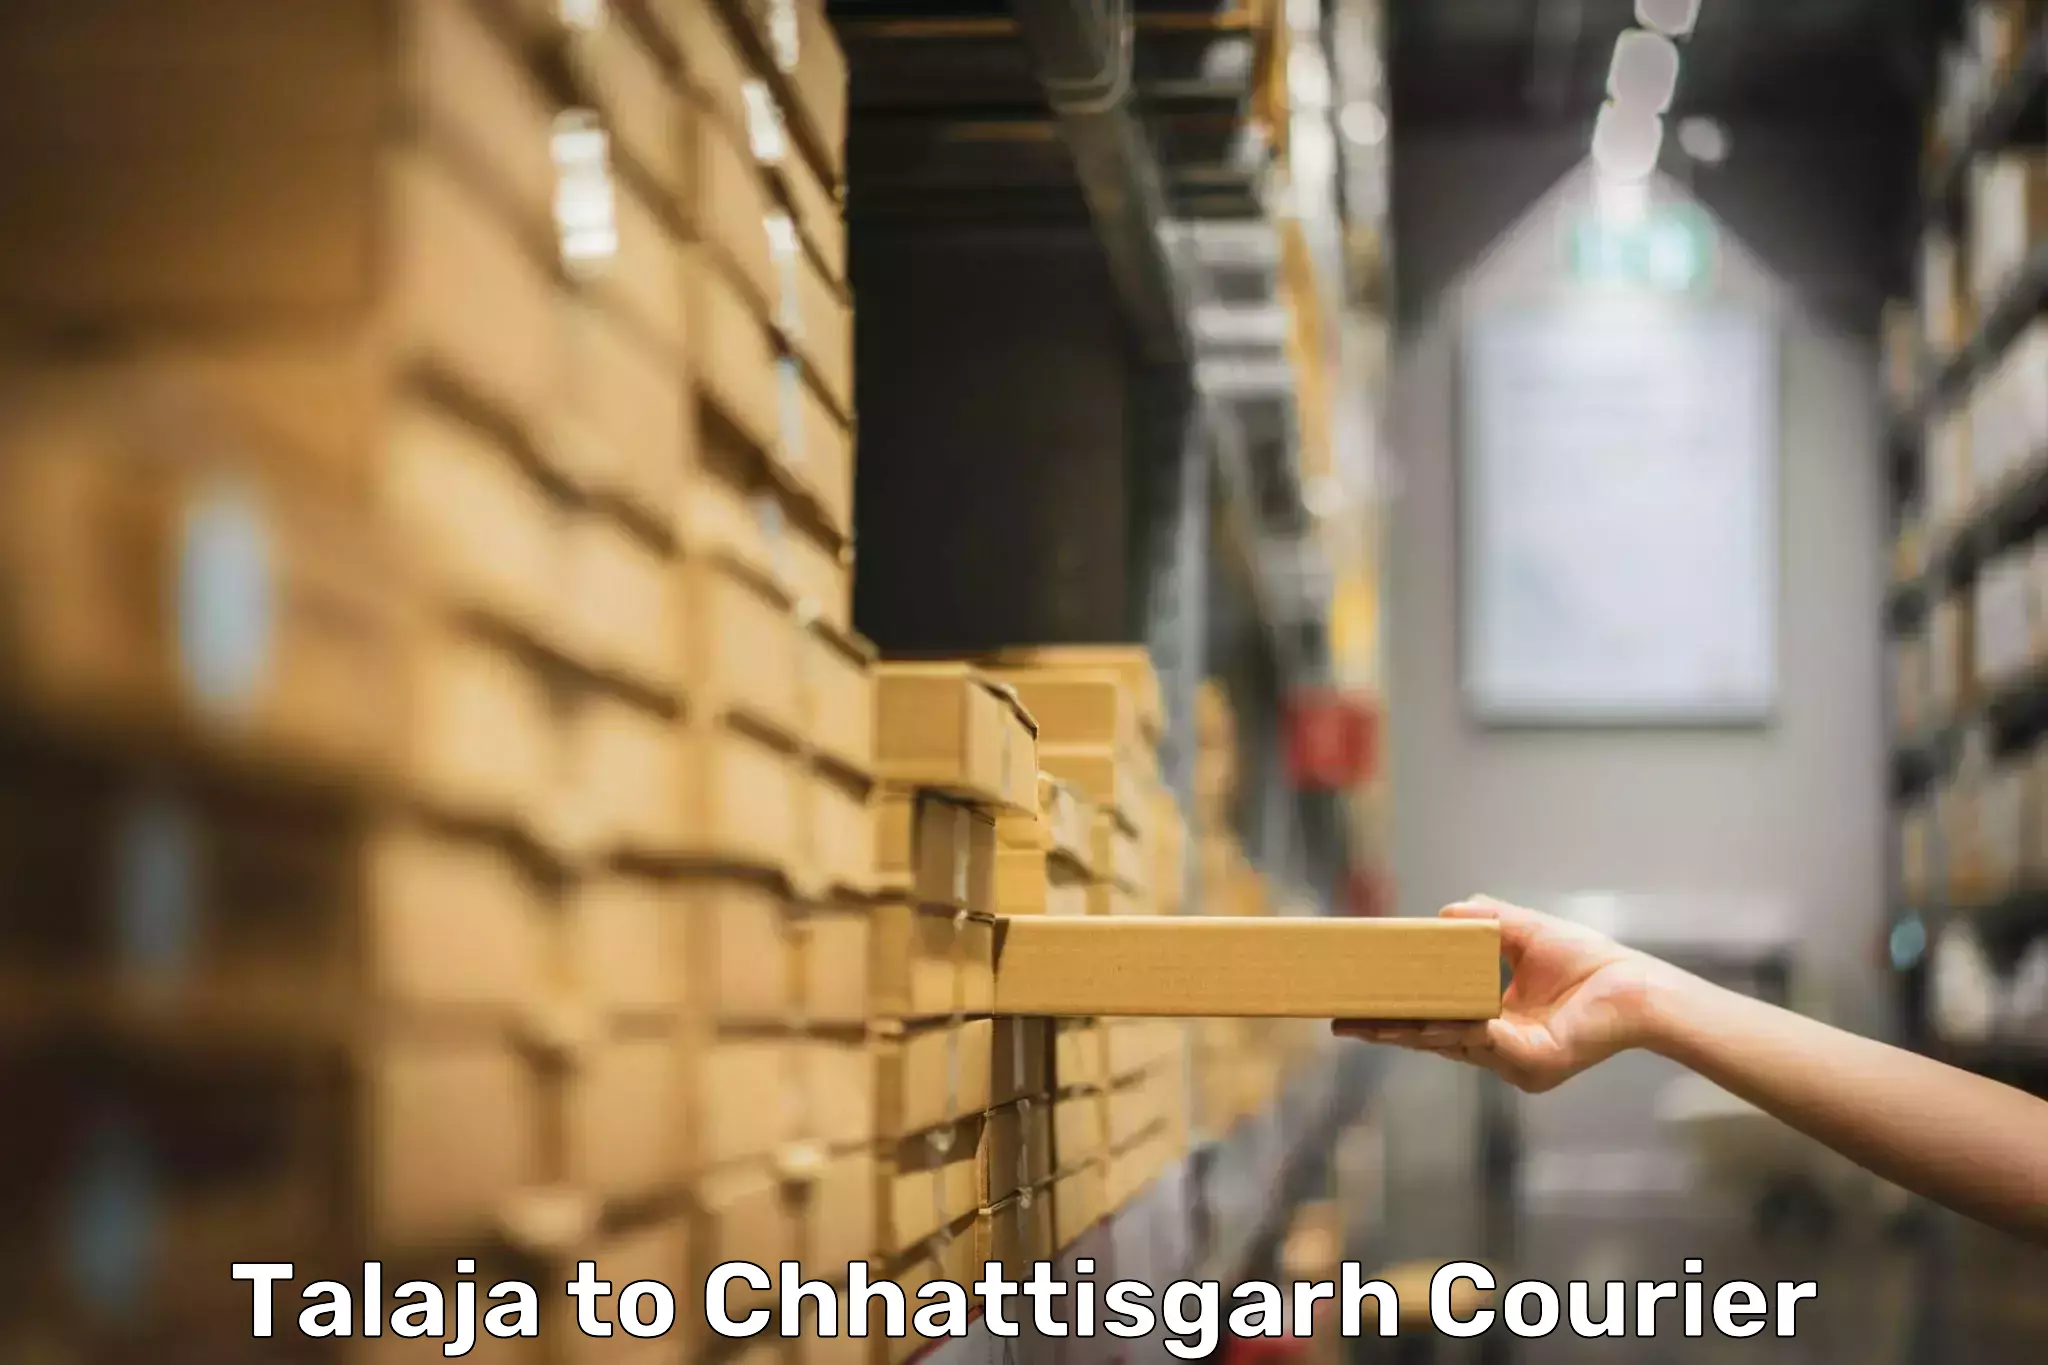 Baggage courier rates calculator Talaja to Korea Chhattisgarh